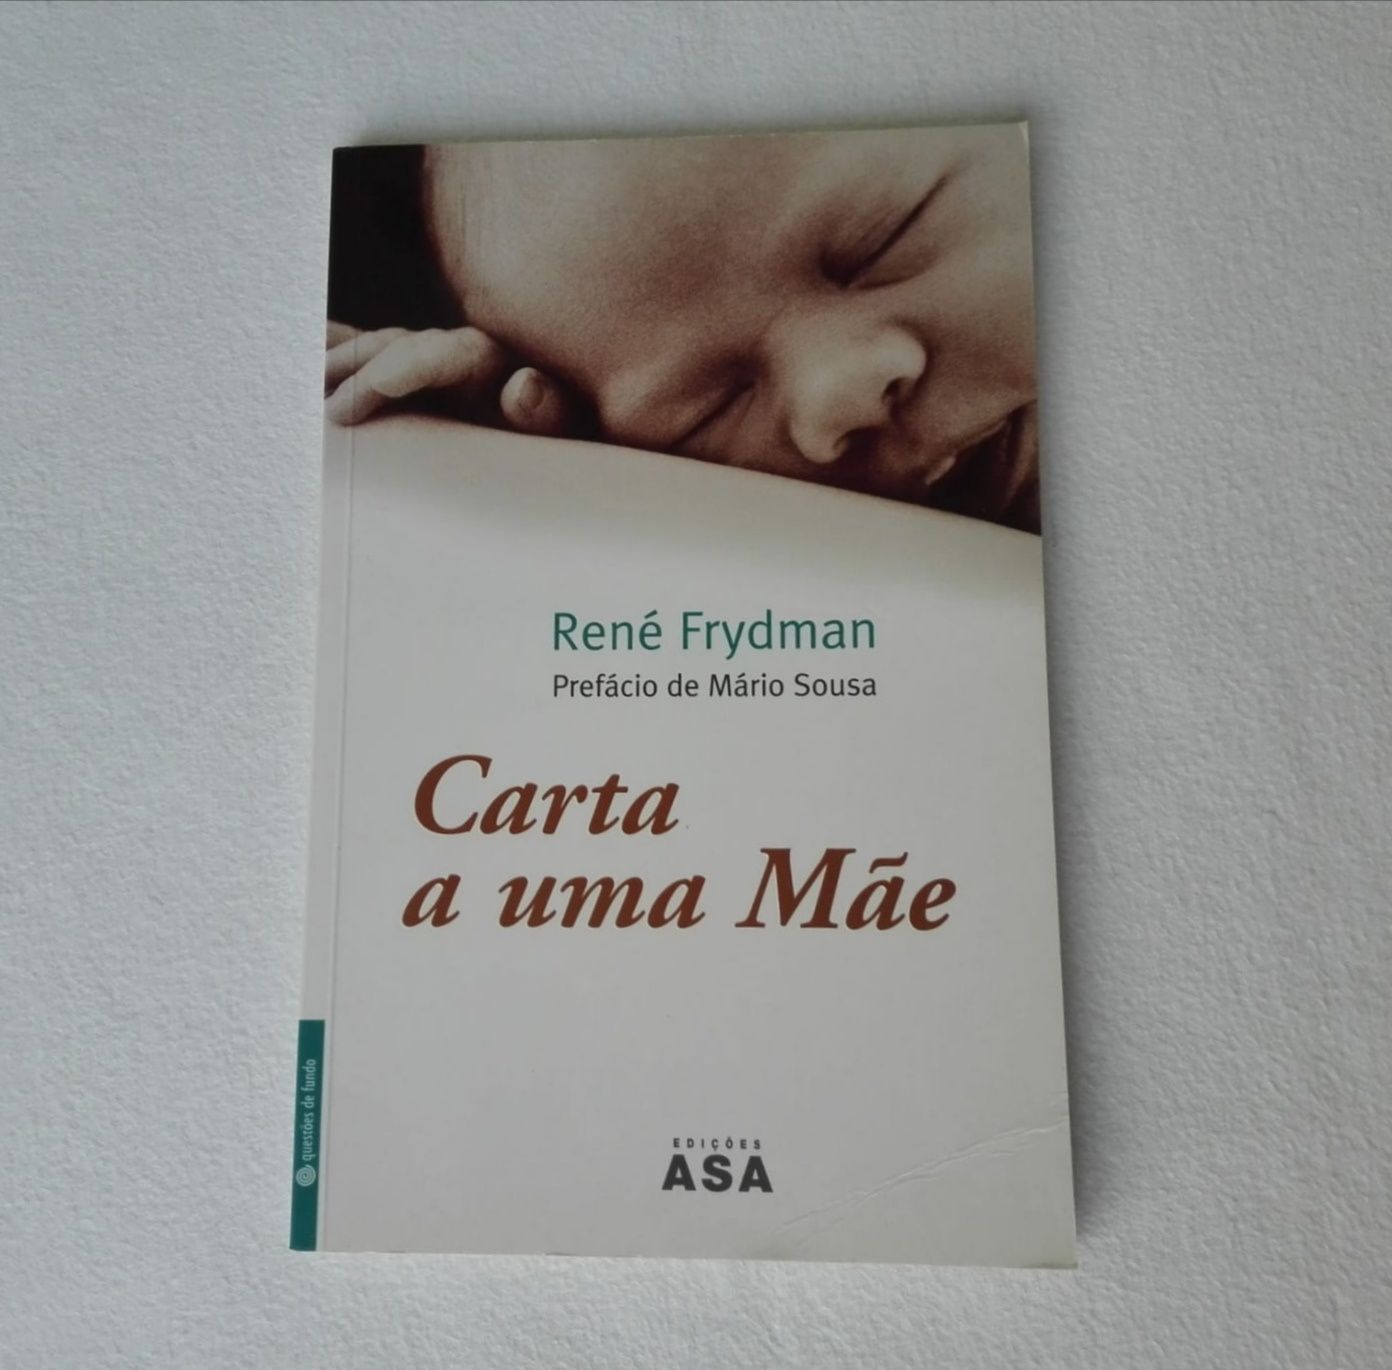 Livro "Carta a uma mãe" de René Frydman